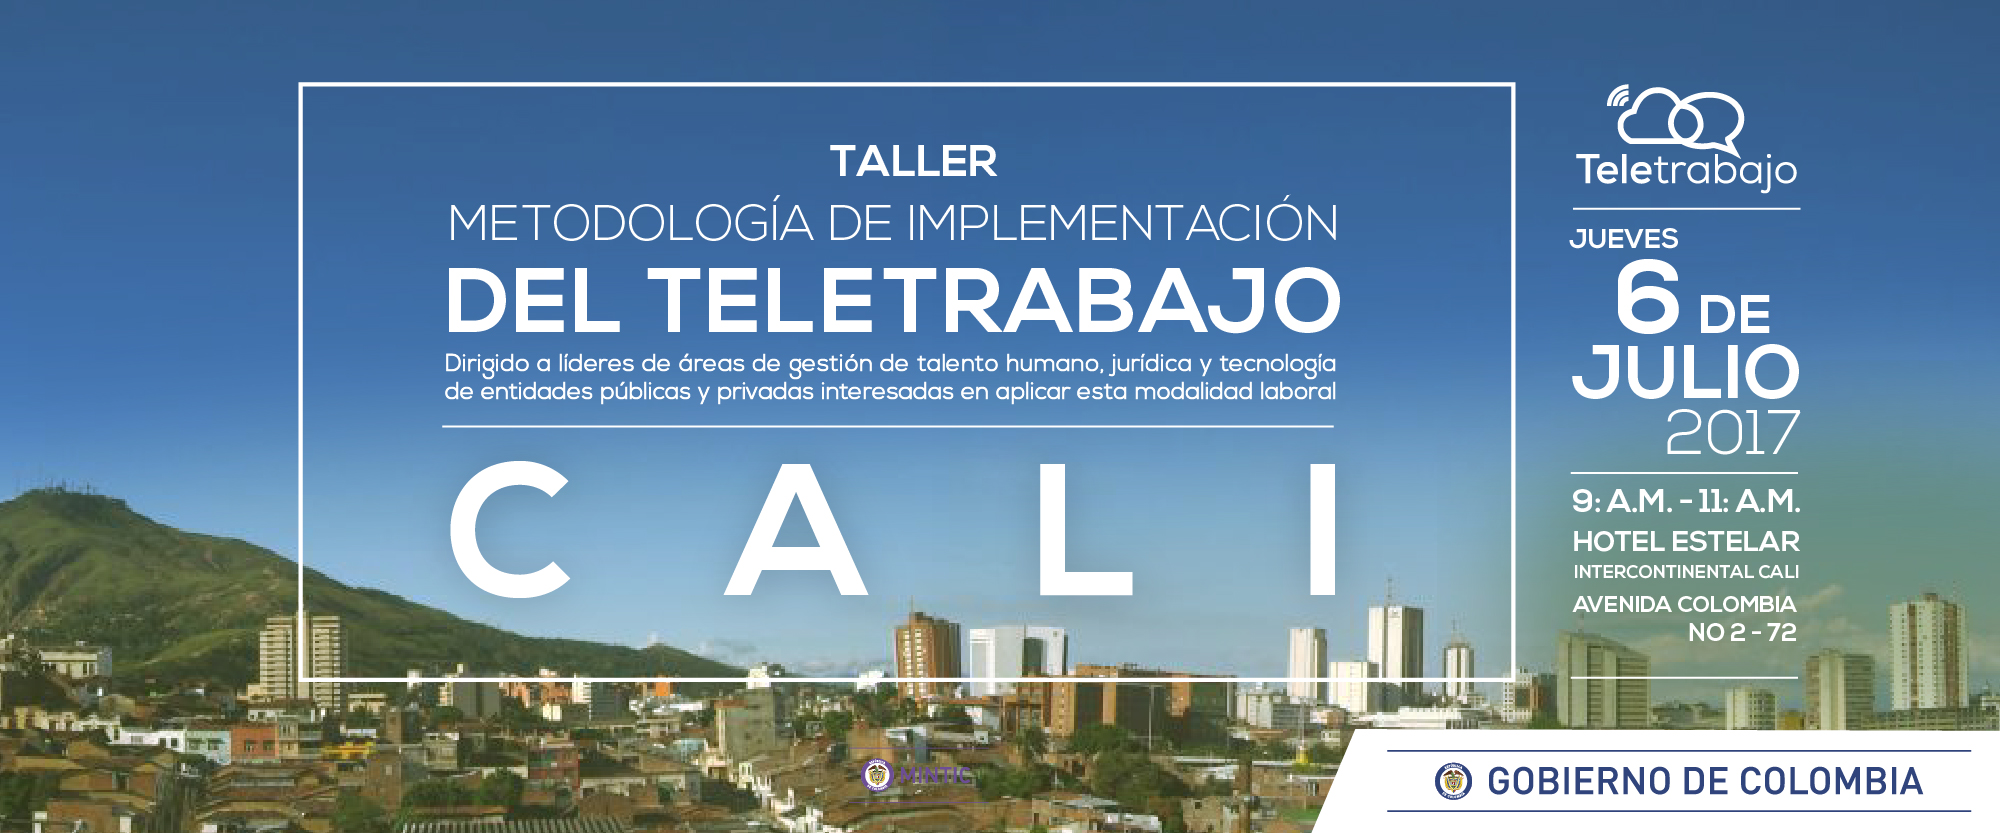 Tres talleres gratuitos de Teletrabajo en el Valle del Cauca